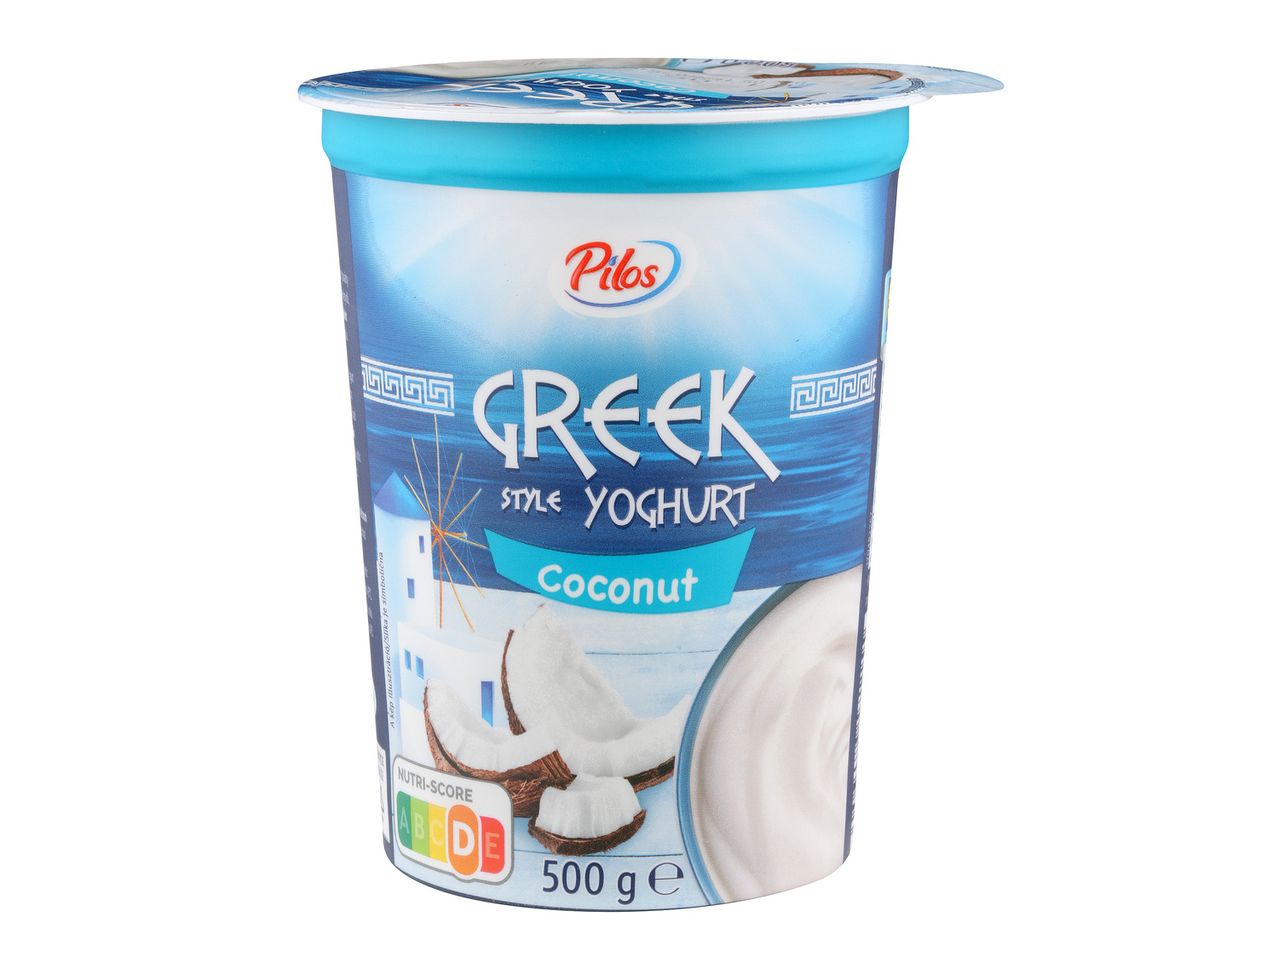 Pojdi na celozaslonski pogled: Sadni jogurt na grški način – Slika 3